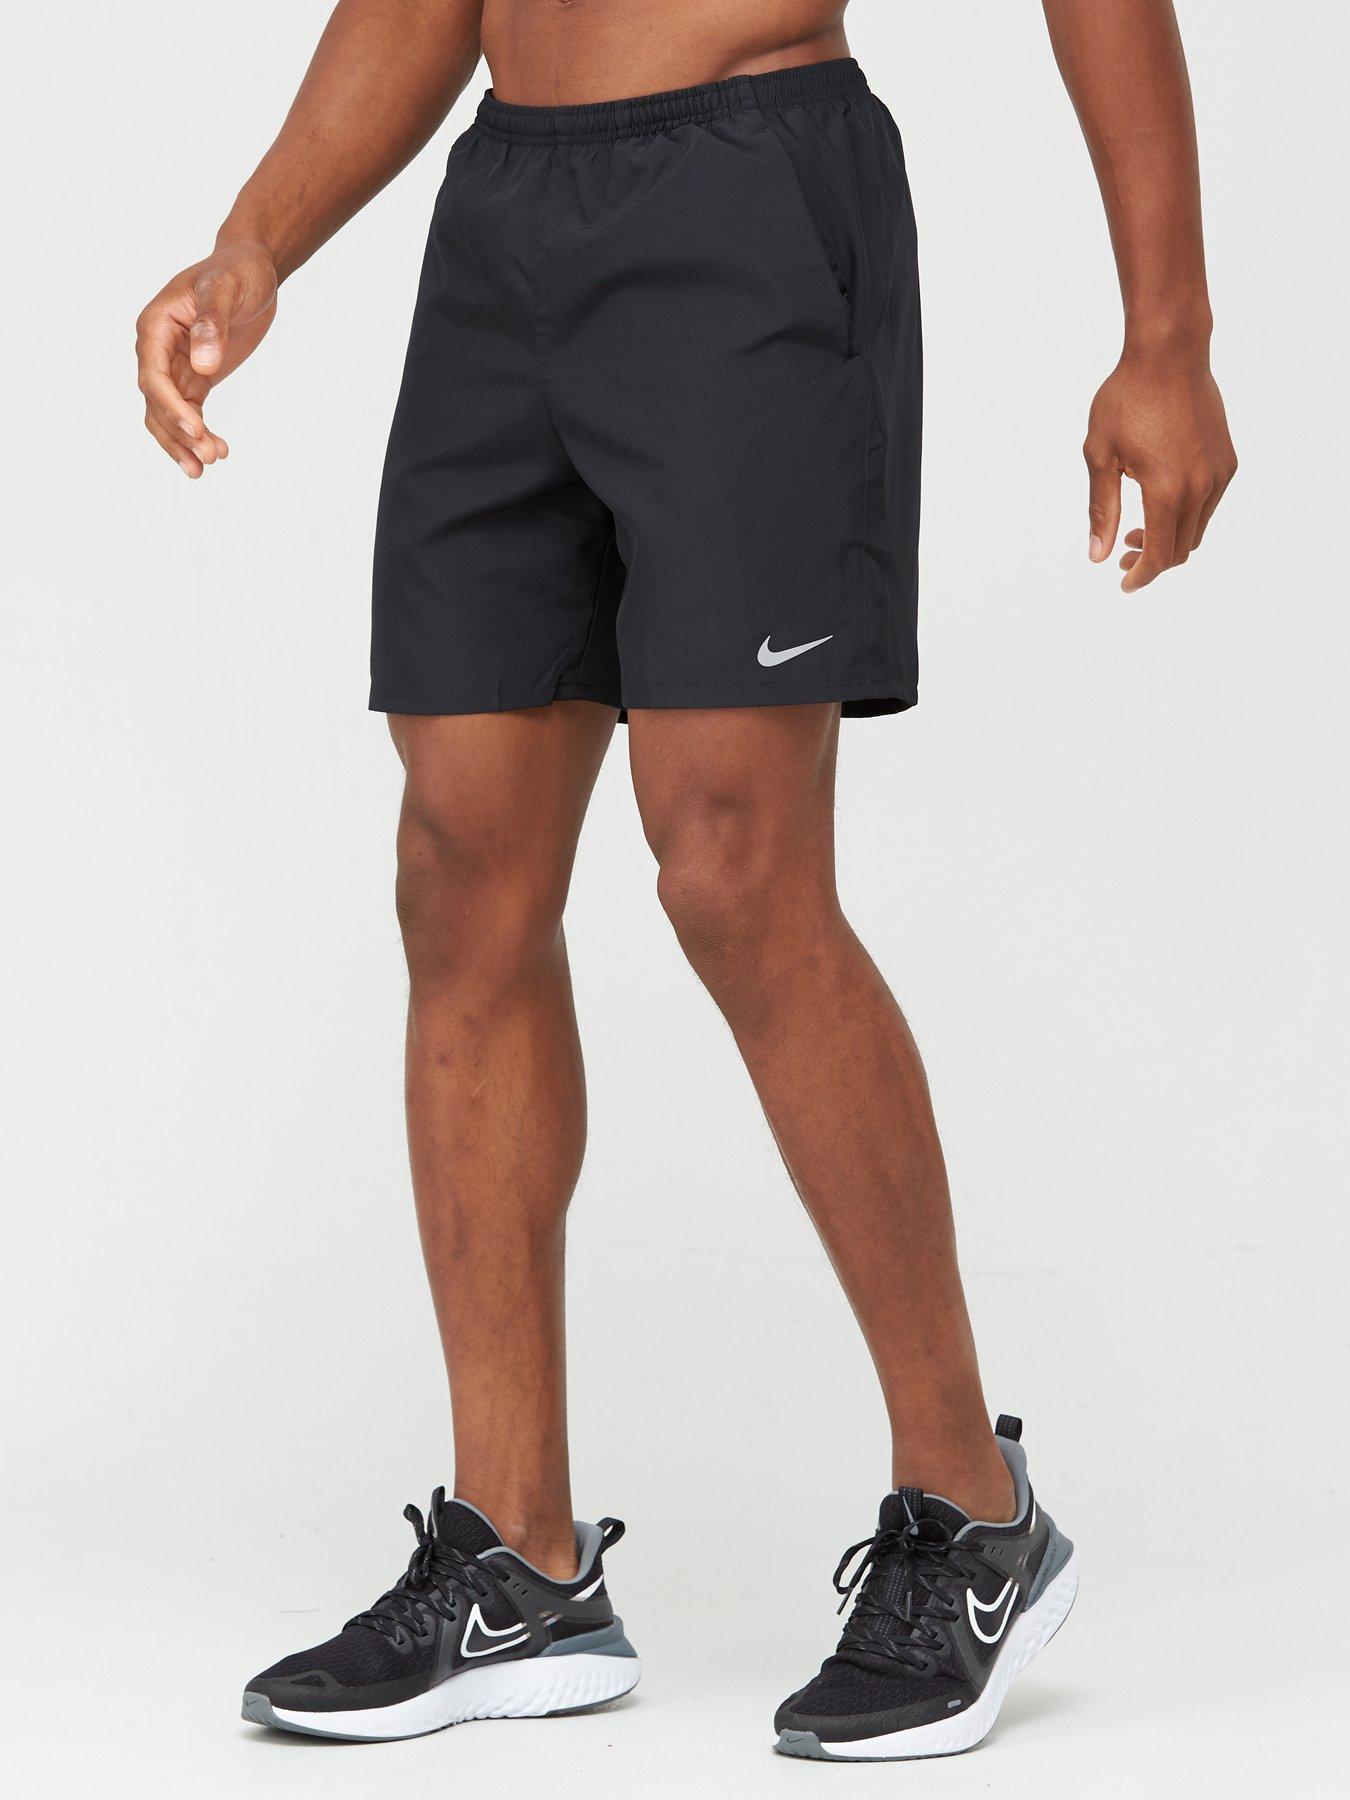 men's nike 7 inch running shorts